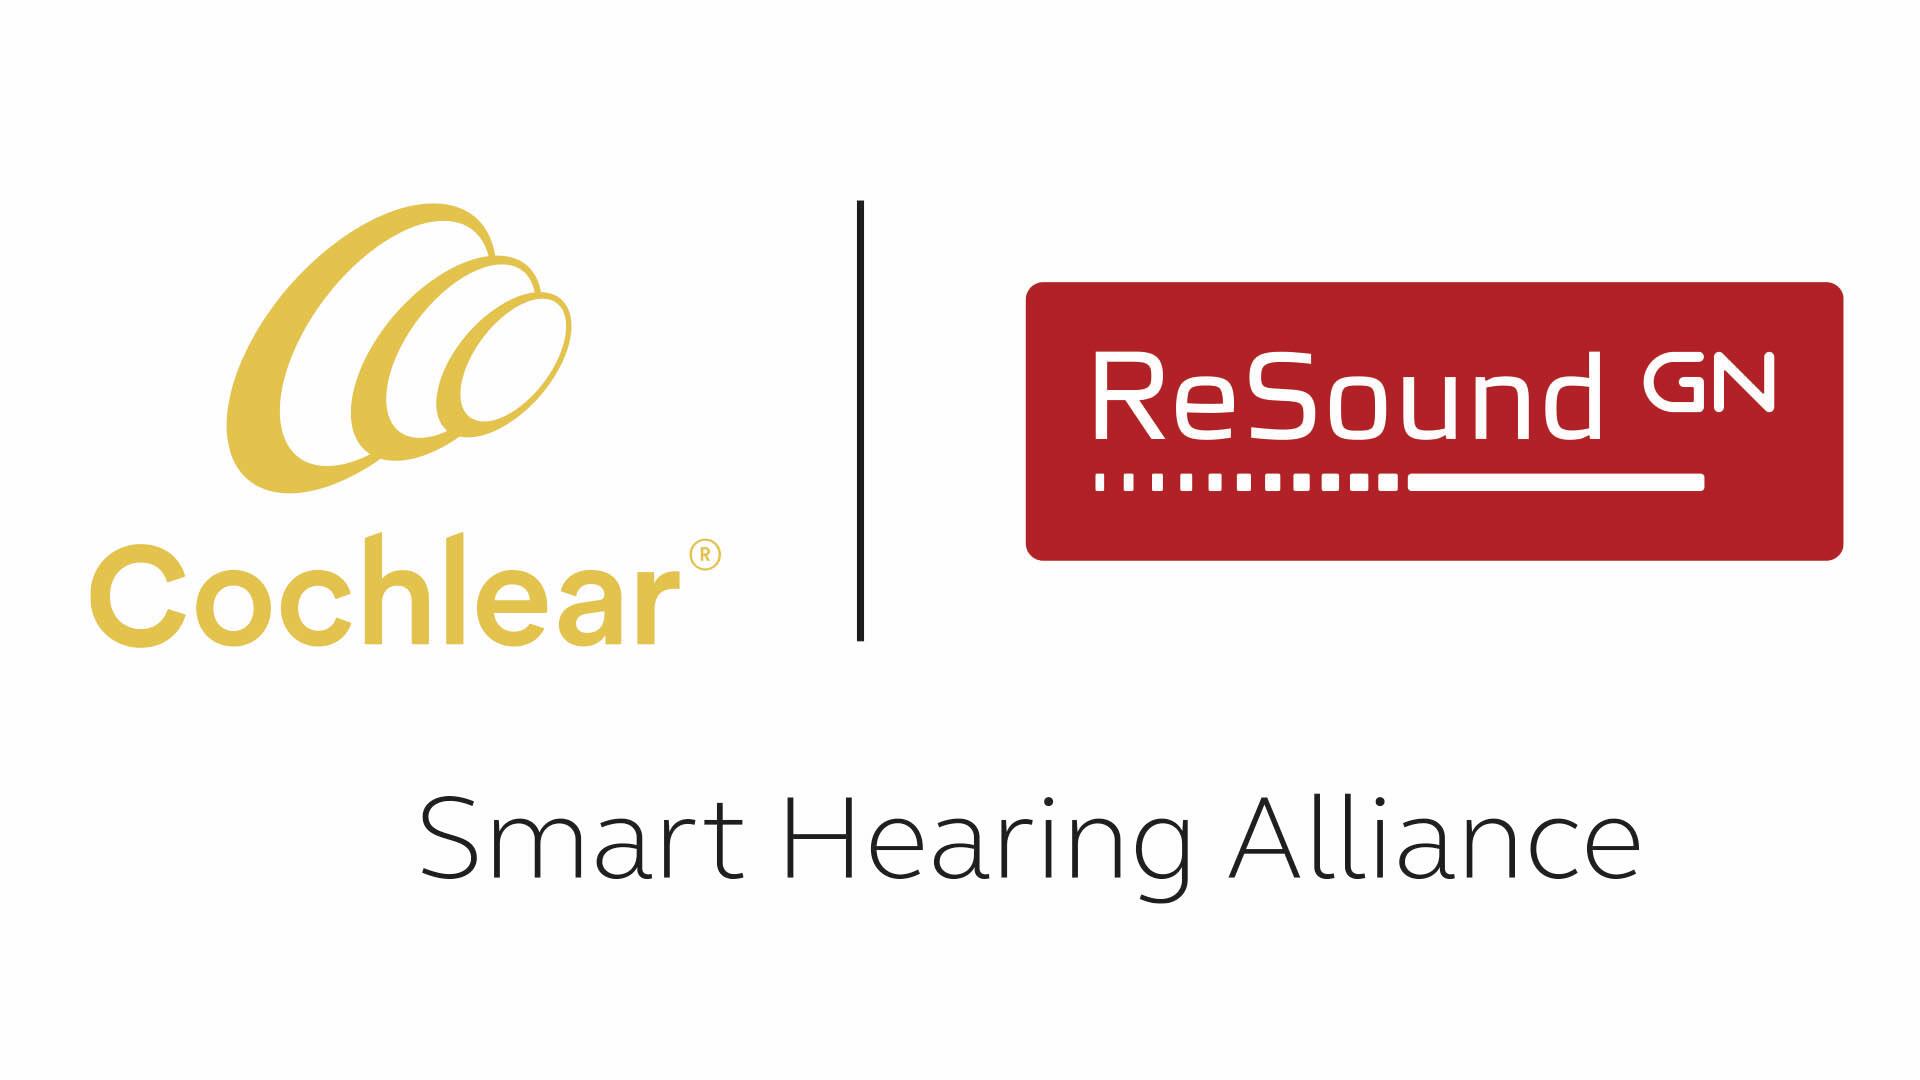 A Cochlear- és ReSound-logók